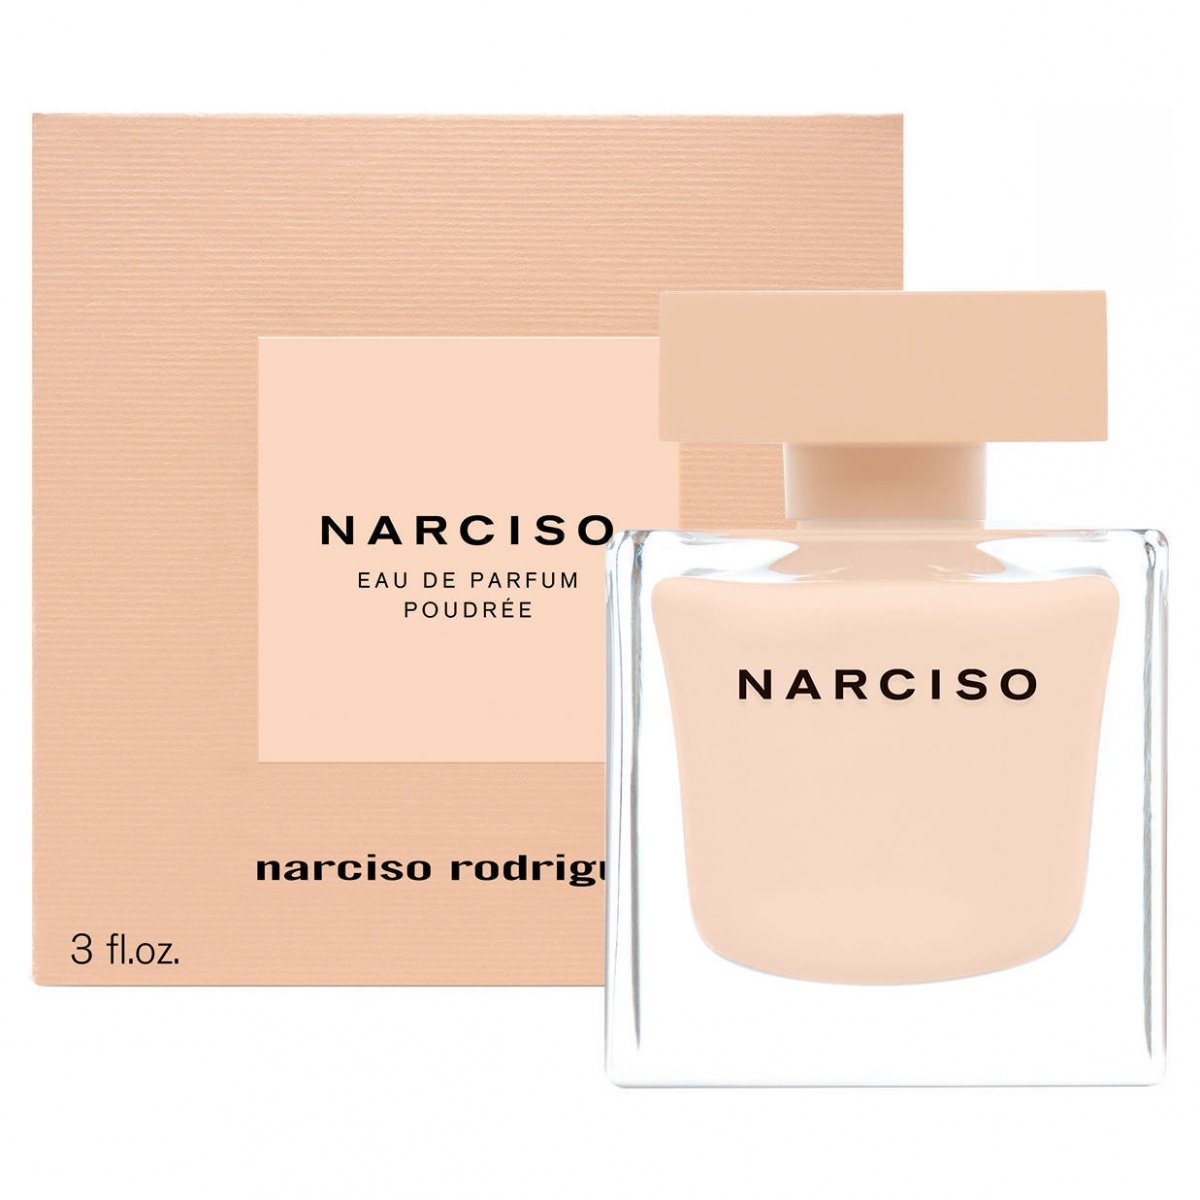 Narciso by Narciso (Eau de Parfum Poudrée) » Reviews & Perfume Facts